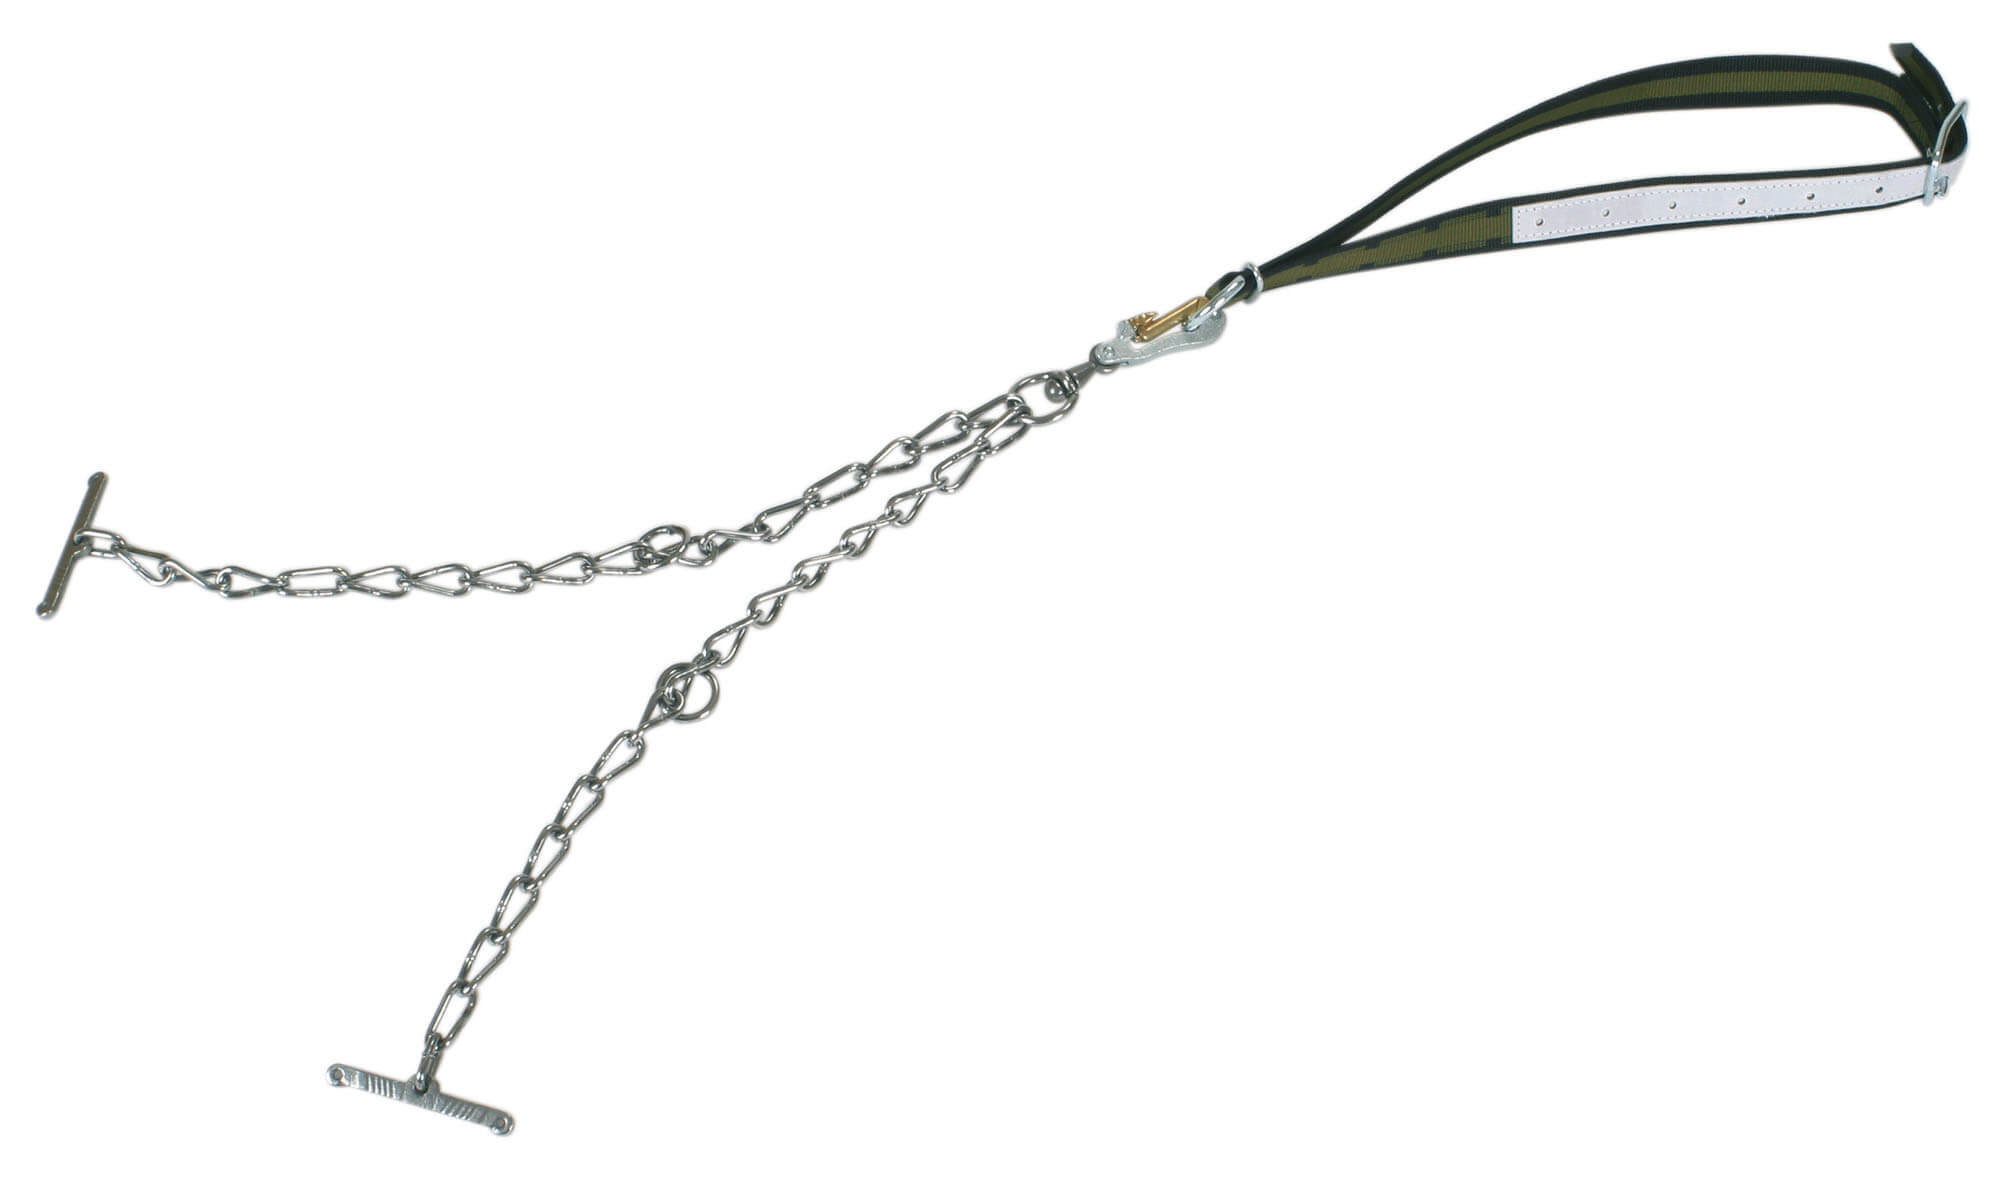 Rinderanbindung Top-Quality mit Halsband - 130 x 4 cm mit Sicherheitsverschluss